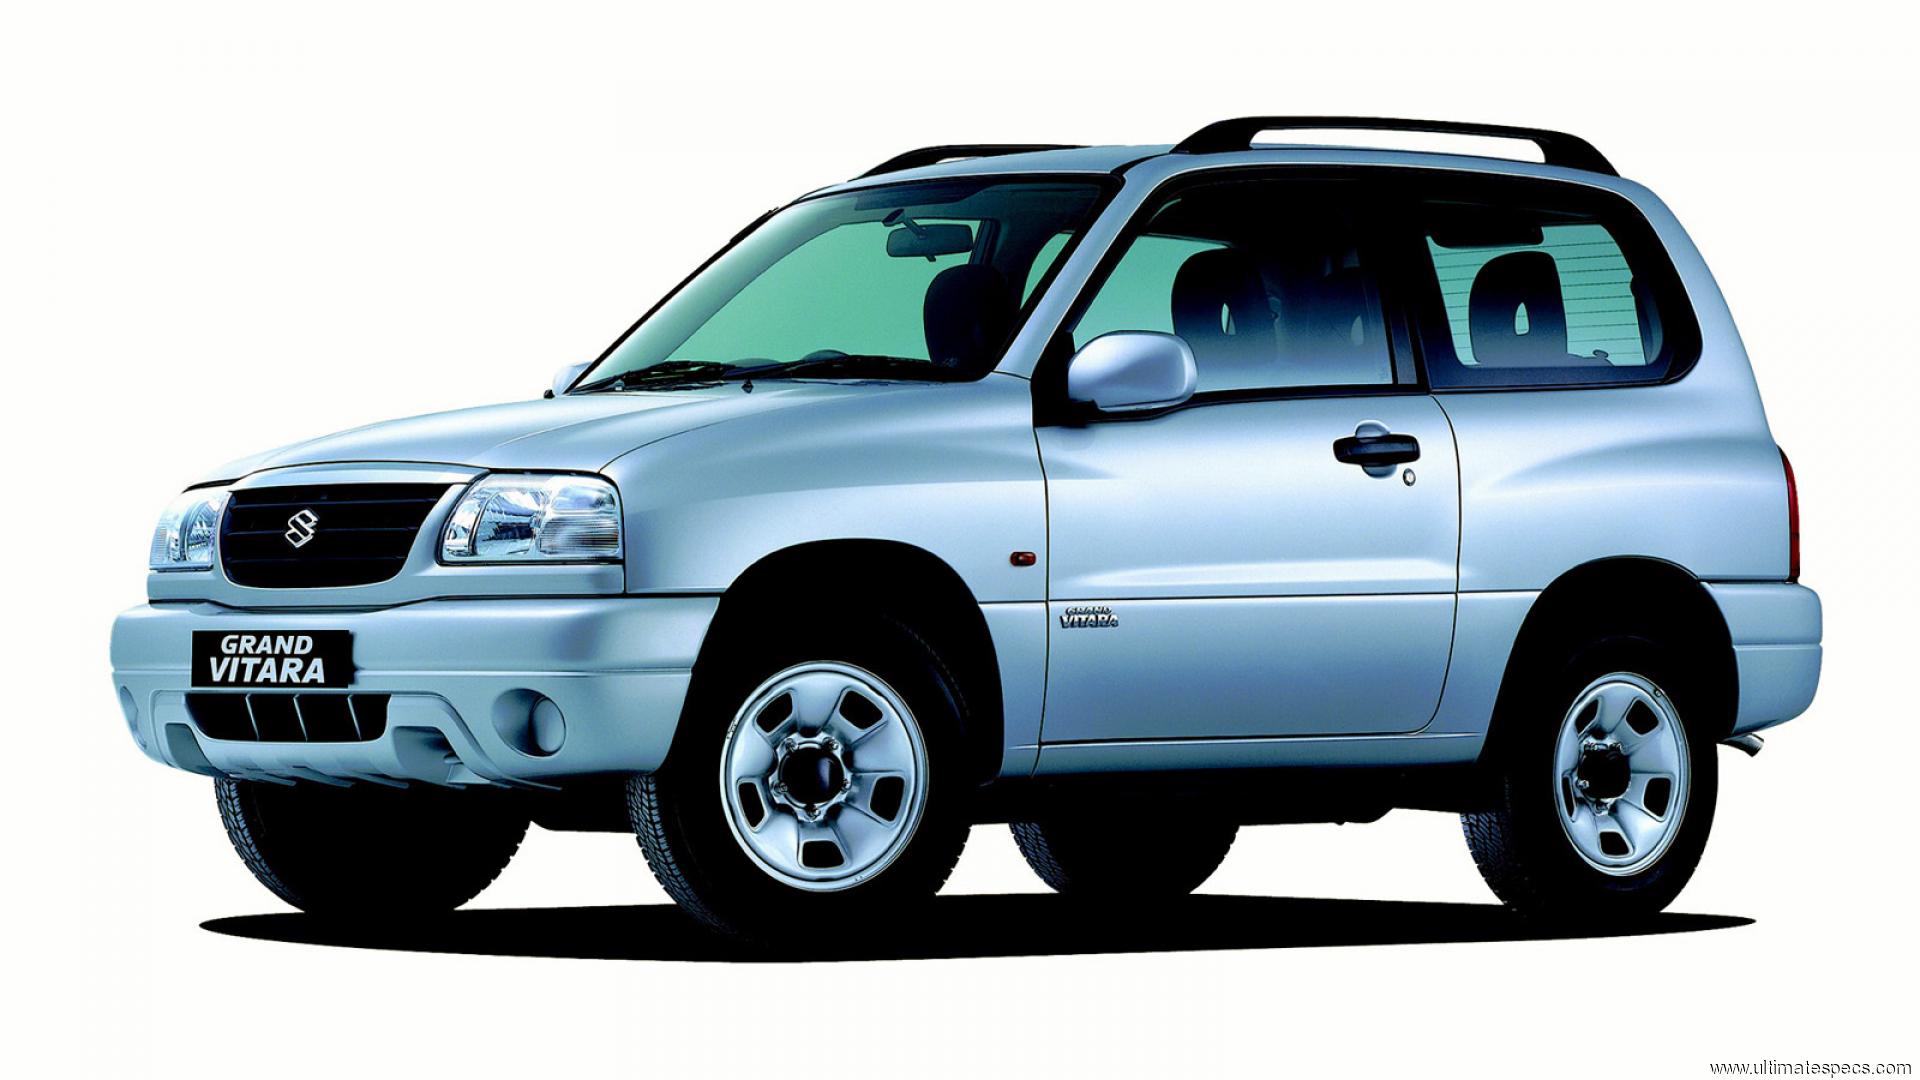 Suzuki vitara 2000. Suzuki Grand Vitara 2004. Suzuki Grand Vitara 2001-2005. Suzuki Grand Vitara 1997. Suzuki Grand Vitara 2000.